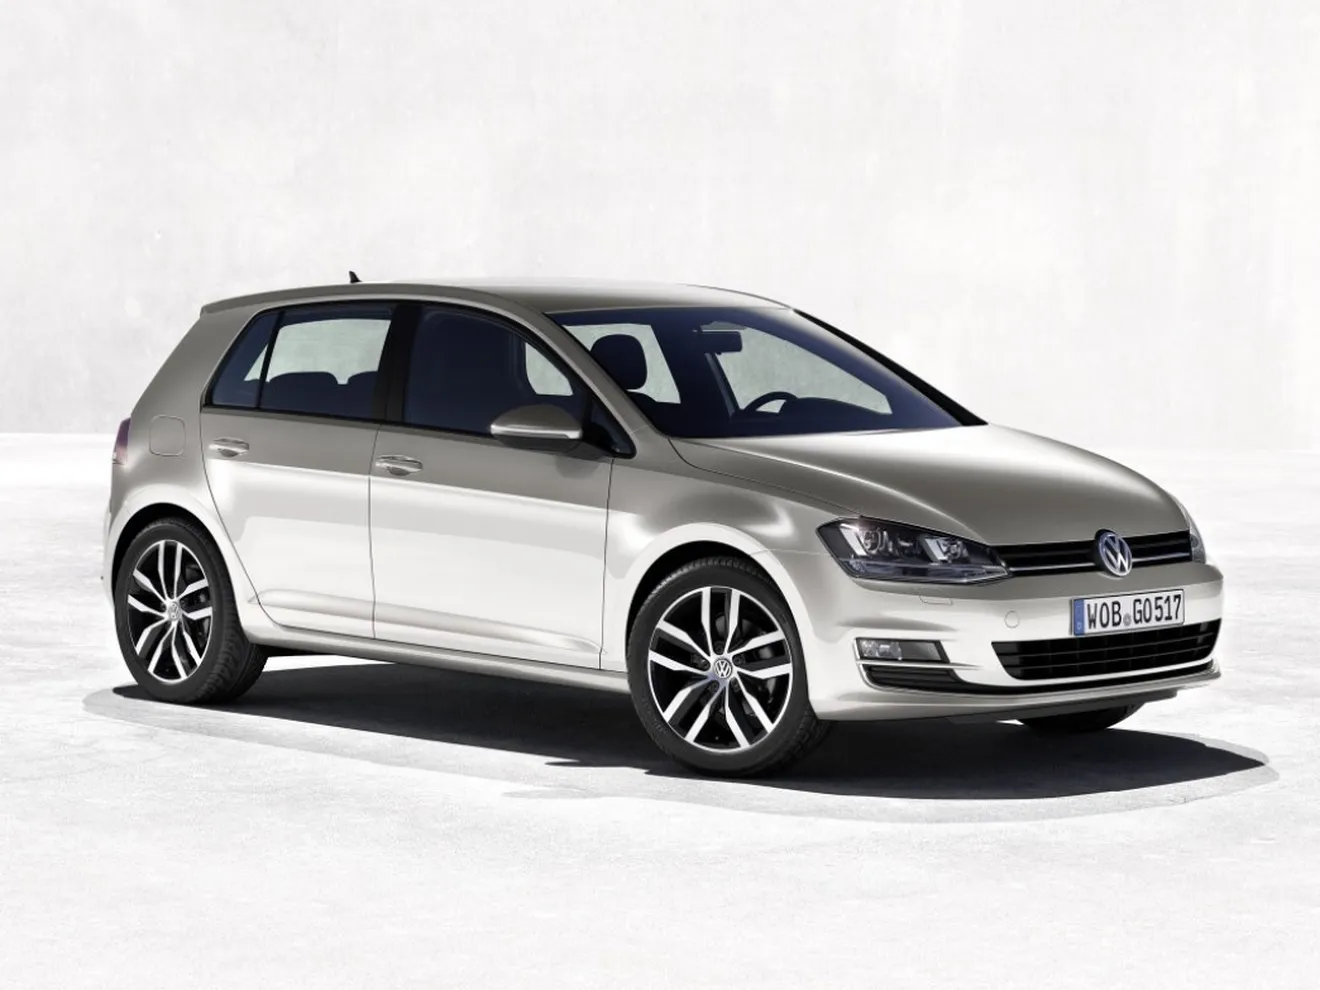 Alemania - Noviembre 2013: Triplete de Volkswagen